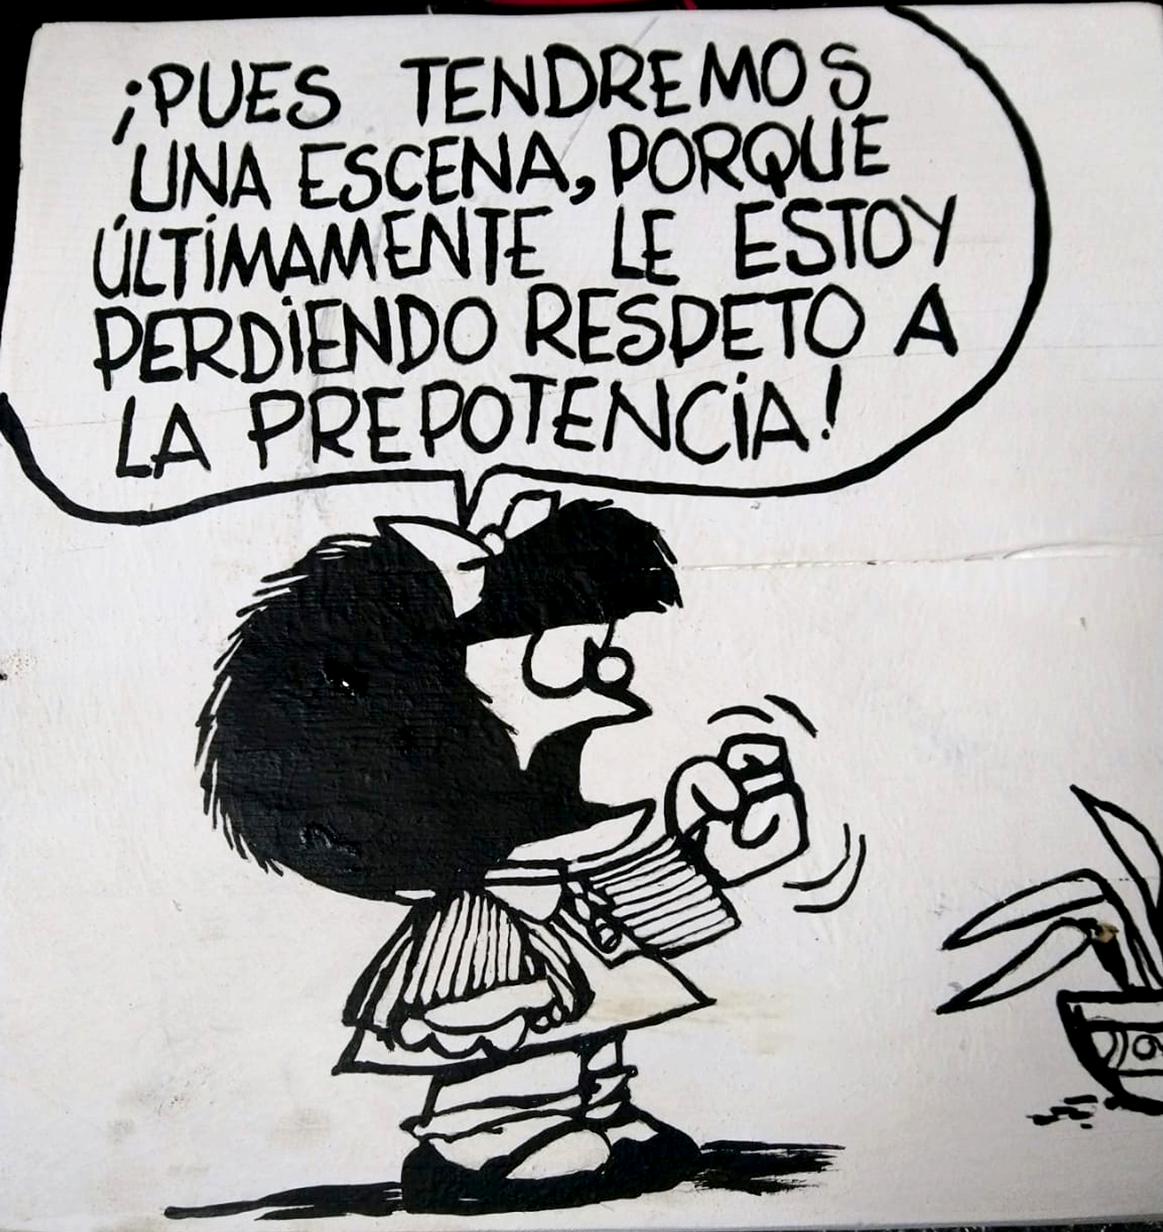 Cuadro Mafalda pues tendremos una escena